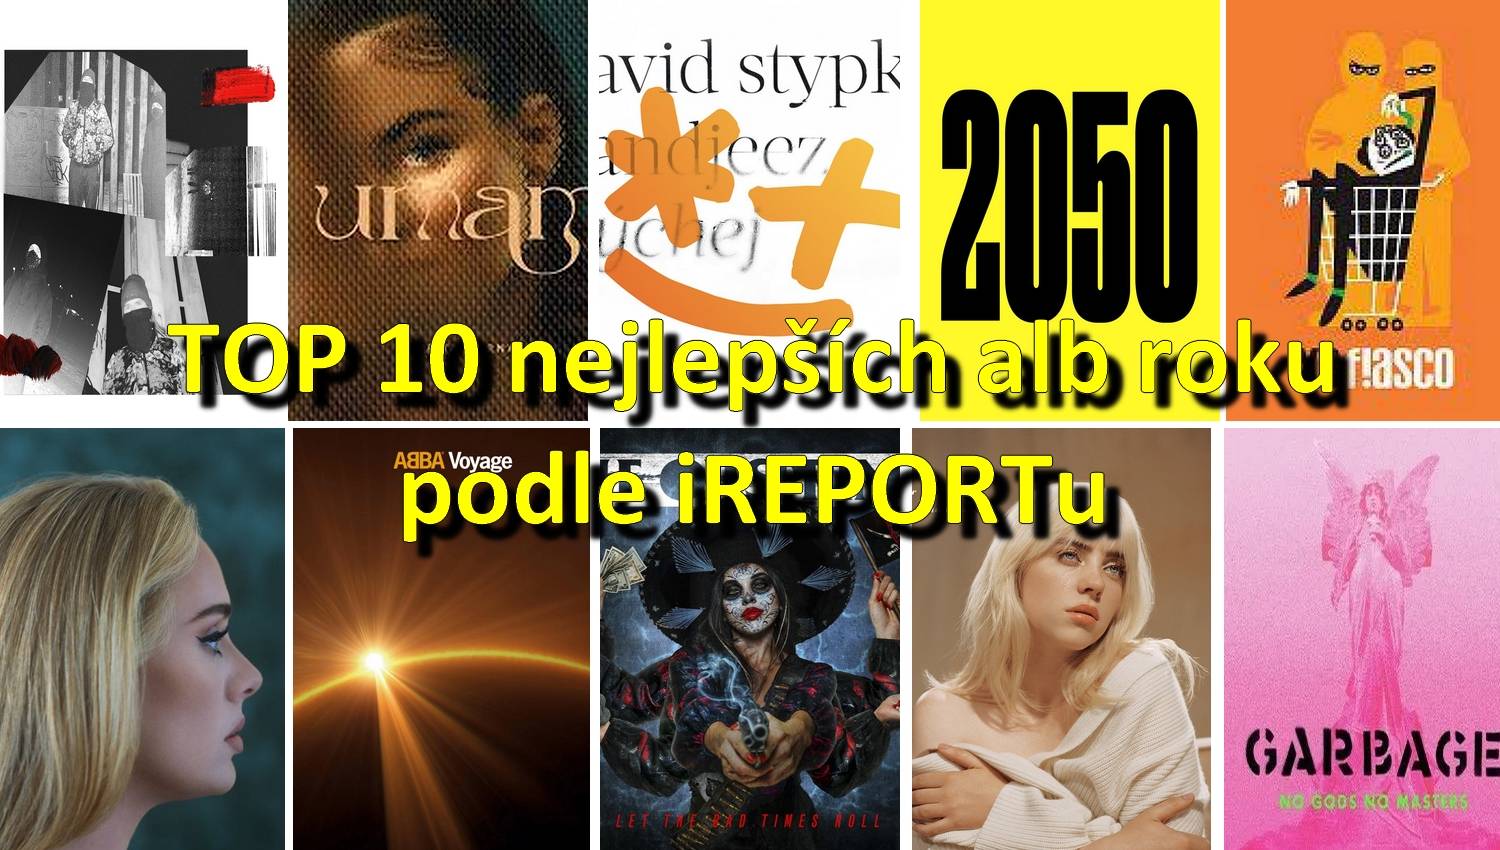 TOP alba roku 2021 podle redakce iREPORT vydali David Stypka, Ewa Farna, Xavier Baumaxa, Adele i Billie Eilish